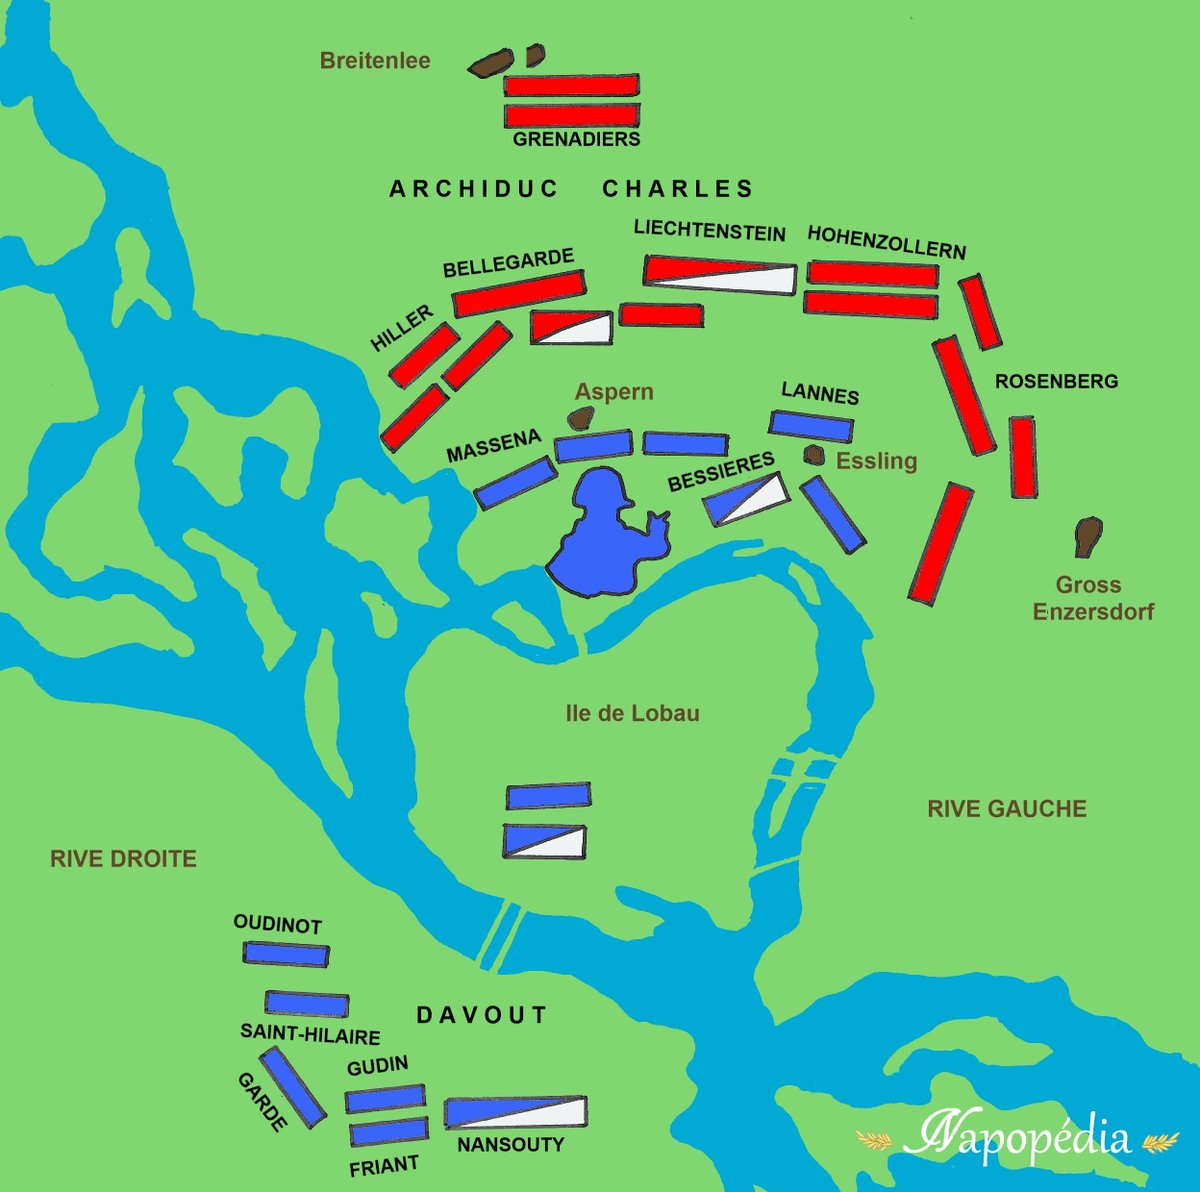 Le 22 mai, Napoléon tentera de franchir le Danube pour aller affronter les Autrichiens dans les villages d'Aspern et Essling. Mais les ponts jetés sur le fleuve seront détruits pendant l'attaque, rendant les renforts impossibles.